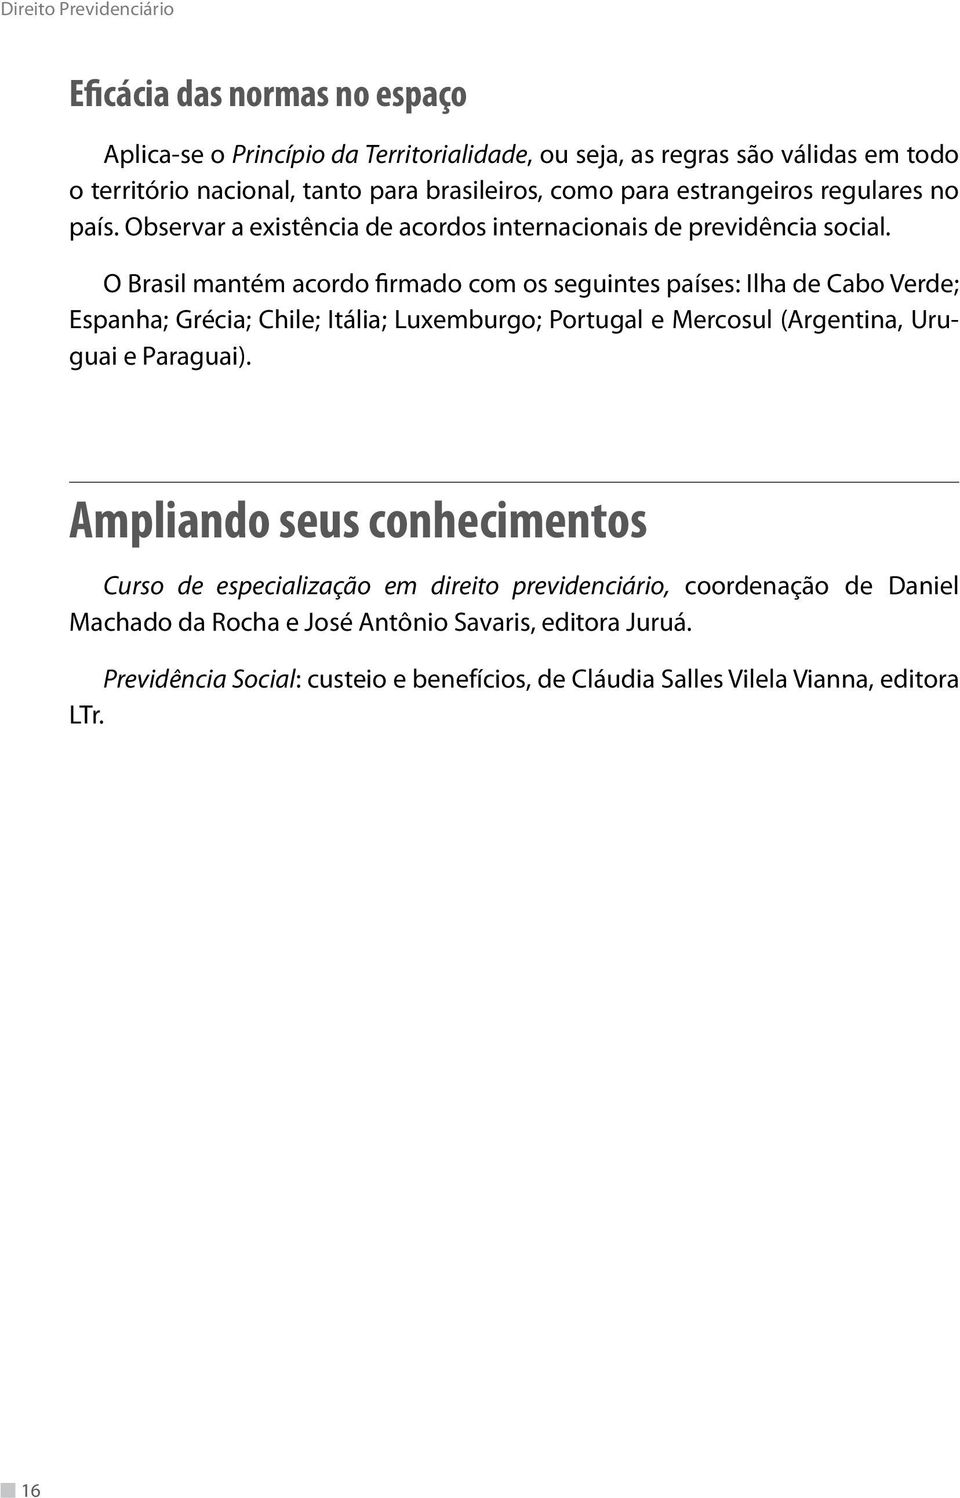 O Brasil mantém acordo firmado com os seguintes países: Ilha de Cabo Verde; Espanha; Grécia; Chile; Itália; Luxemburgo; Portugal e Mercosul (Argentina, Uruguai e Paraguai).